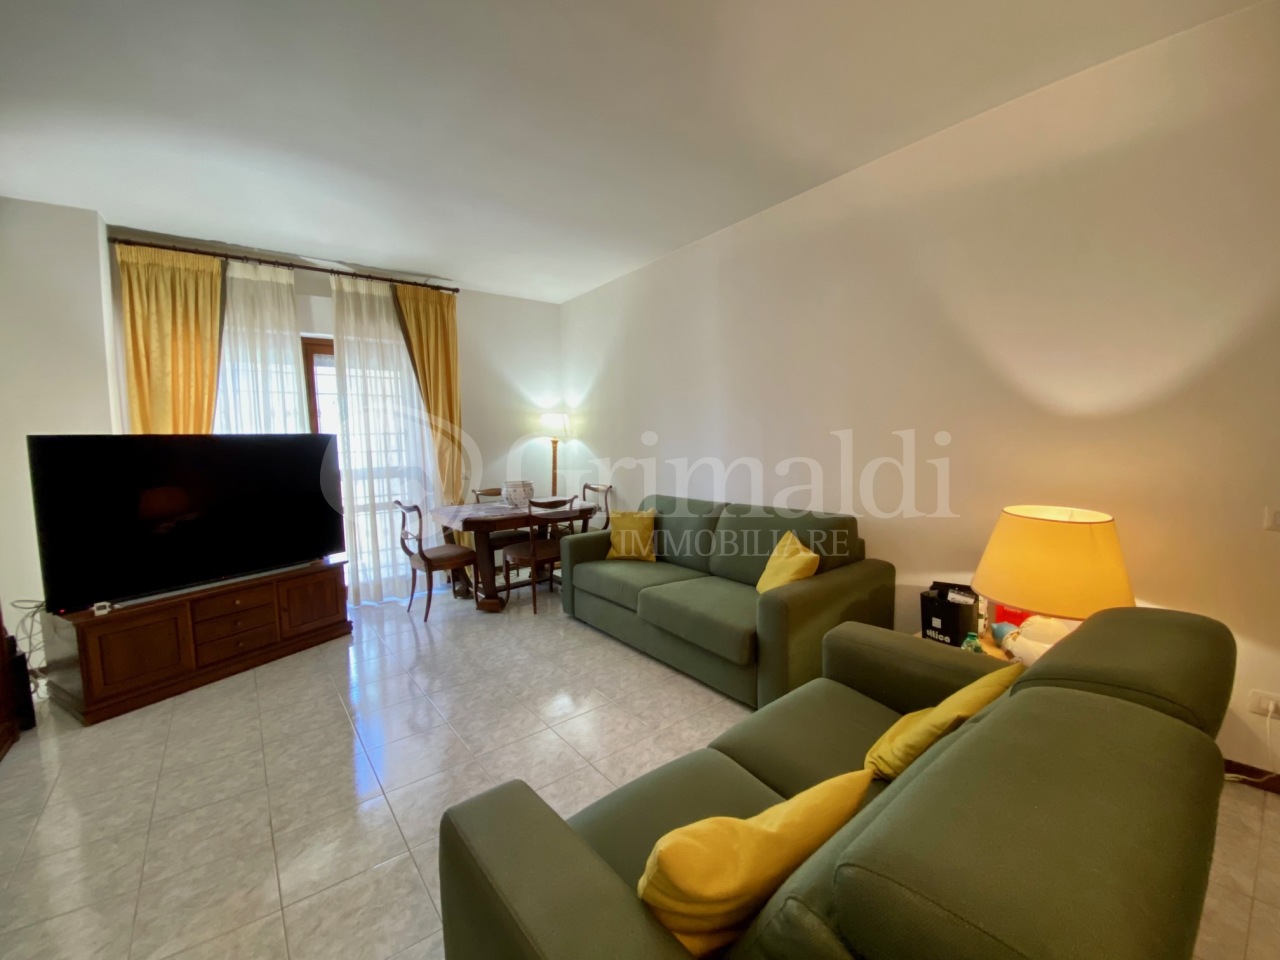 Appartamento in vendita a Anzio, 3 locali, prezzo € 155.000 | PortaleAgenzieImmobiliari.it